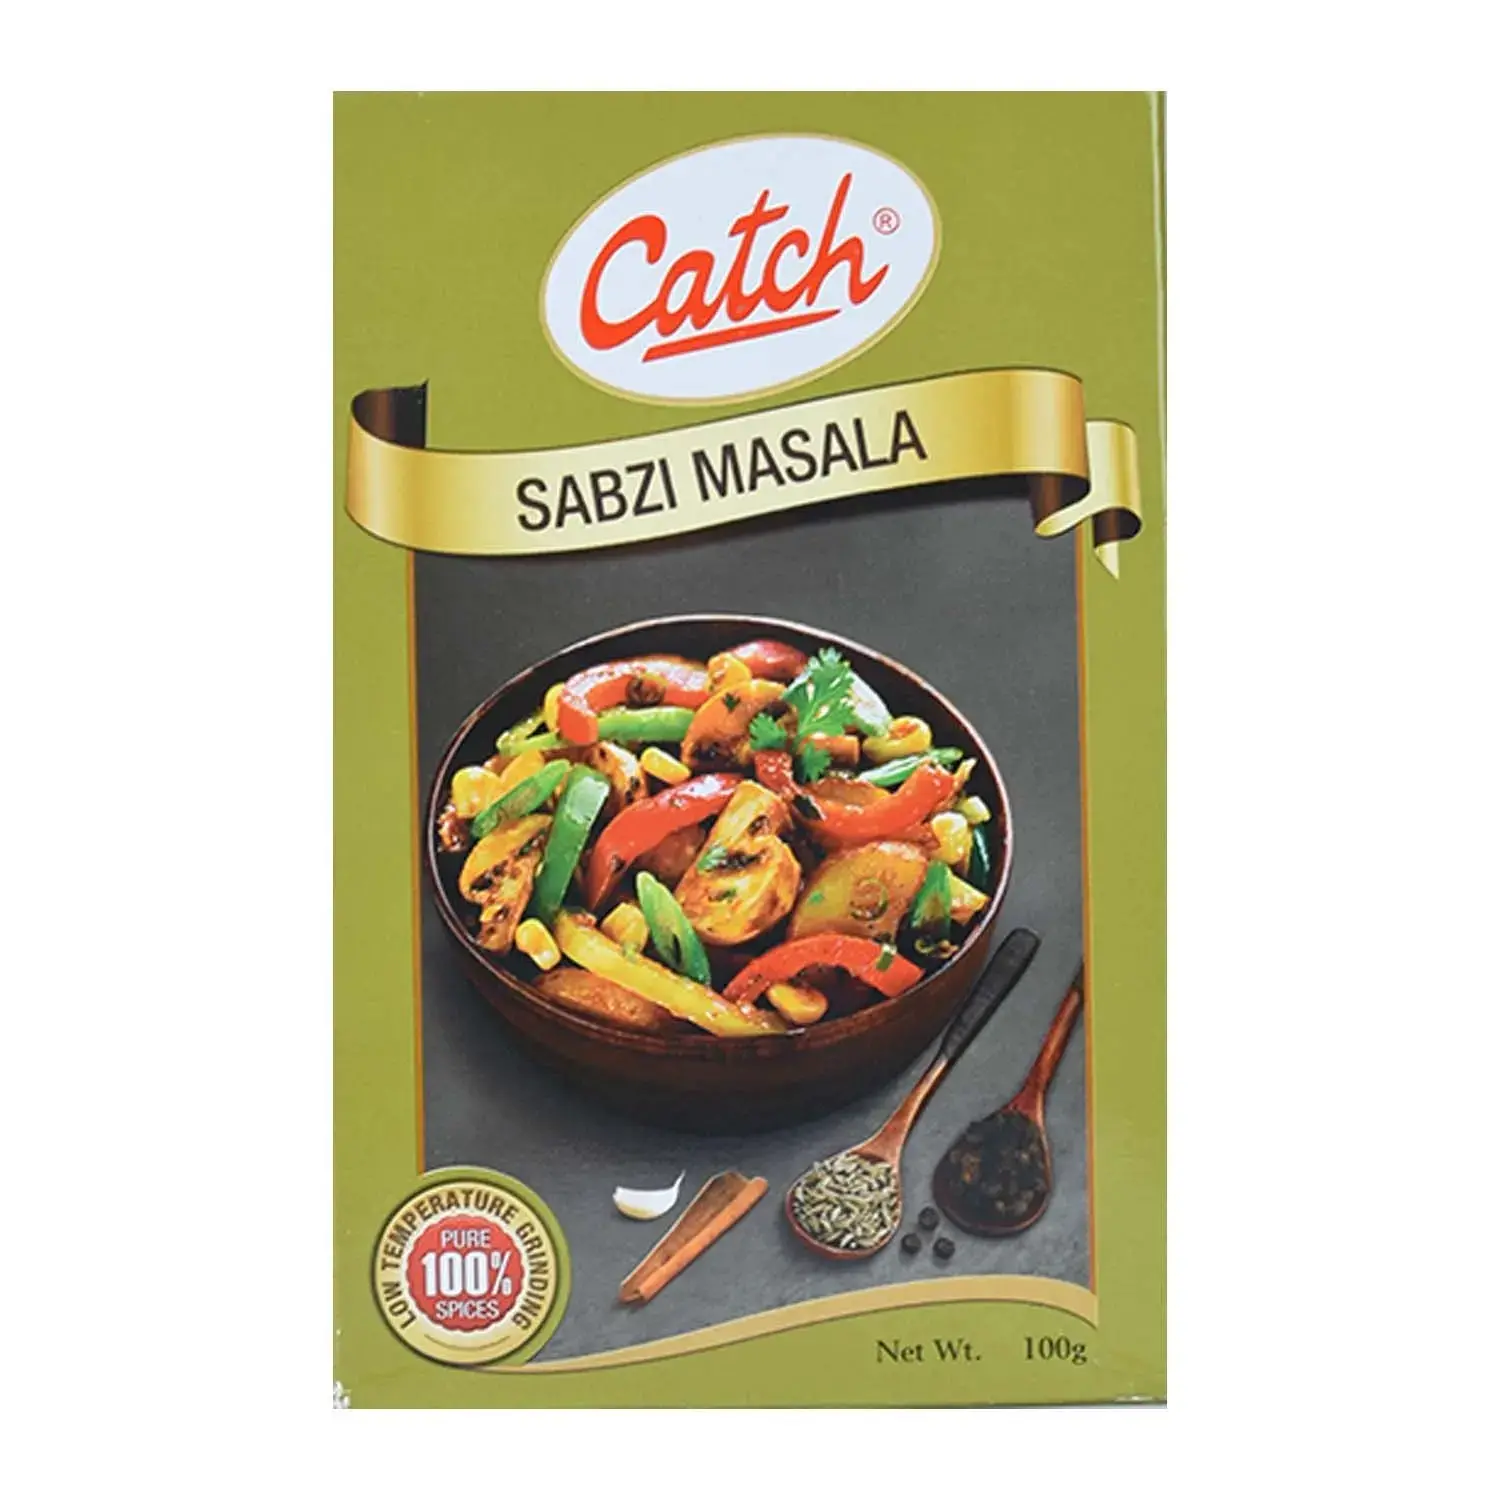 Catch Sabji Masala